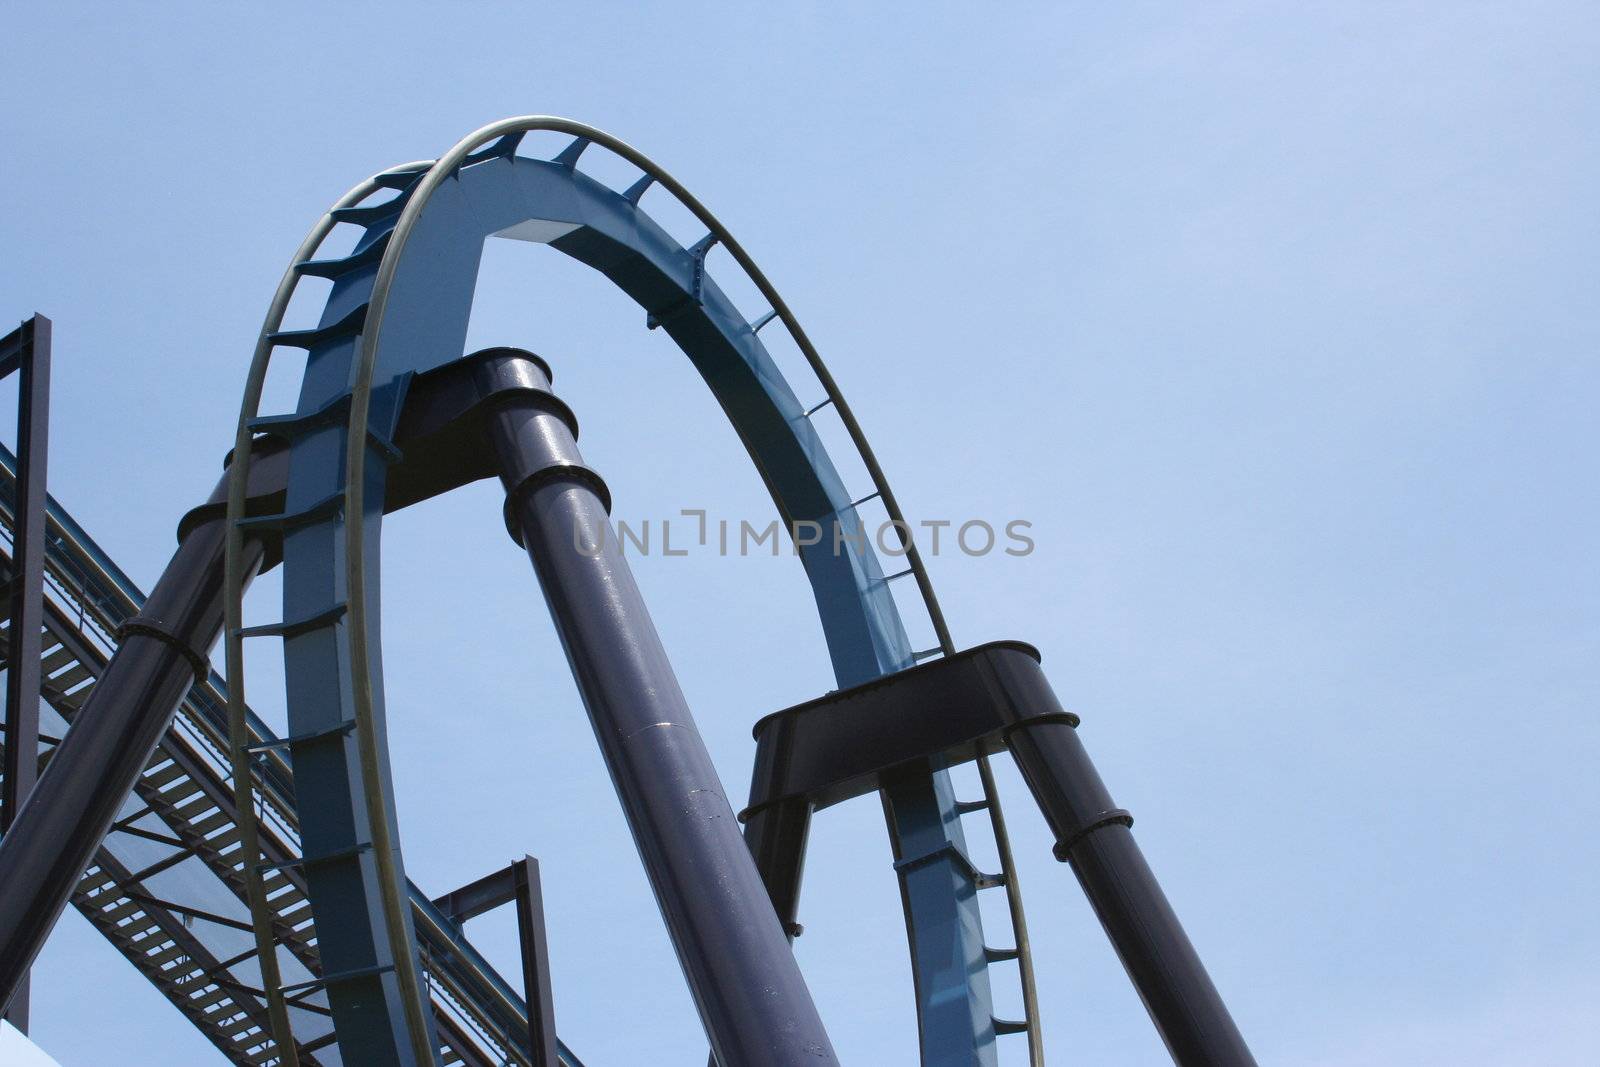 A rollercoaster loop